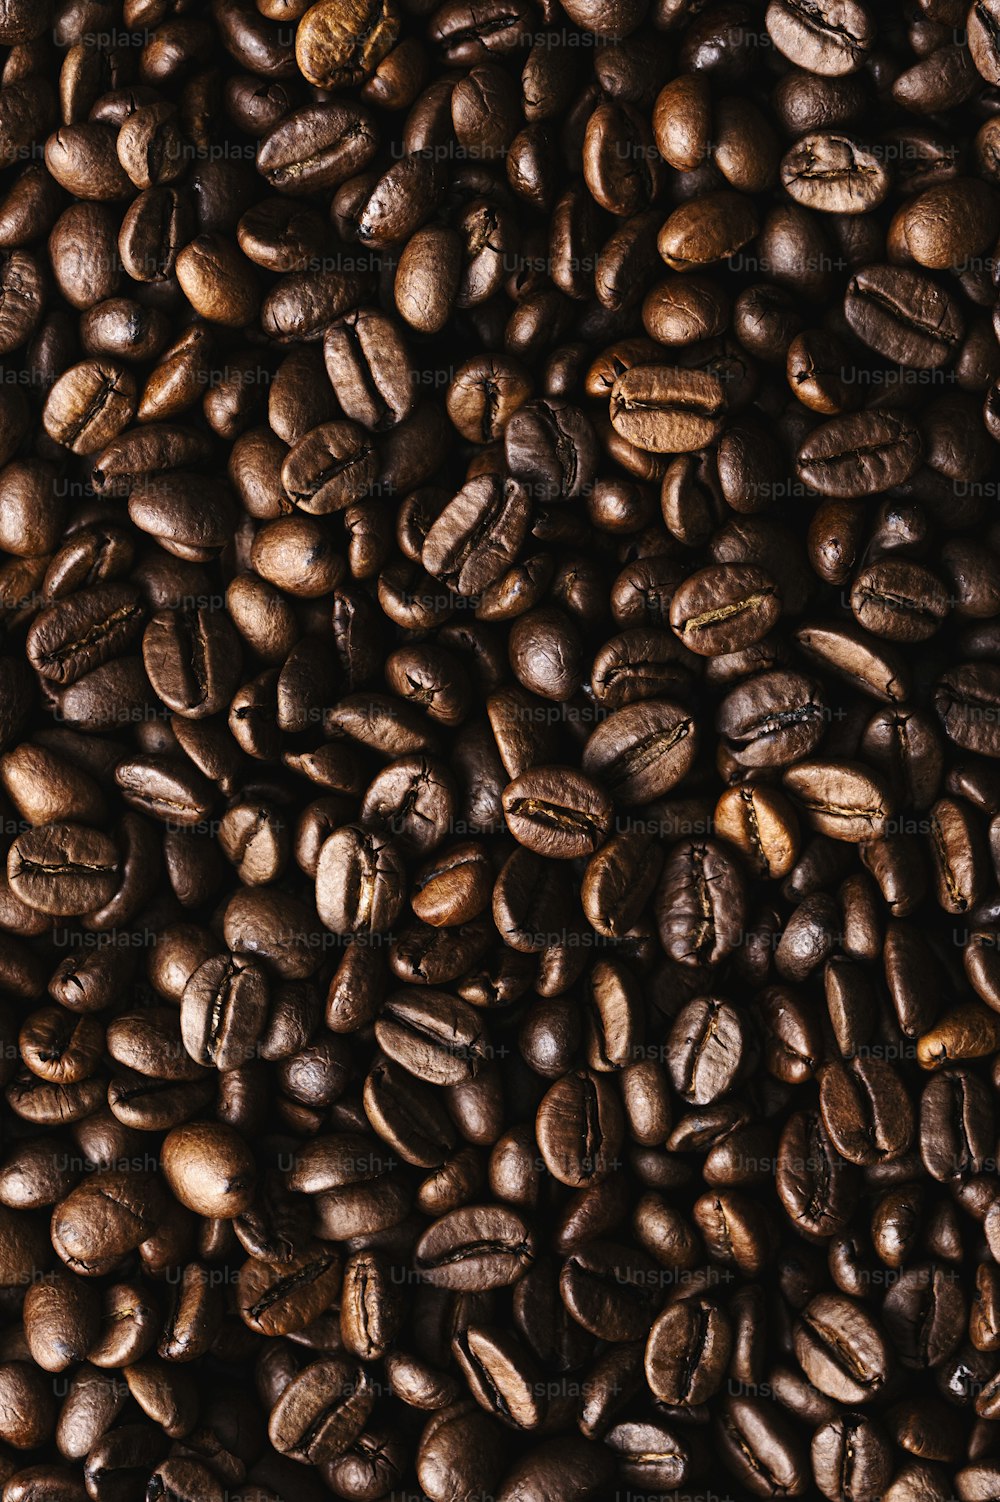 Una pila de granos de café se muestra en esta imagen